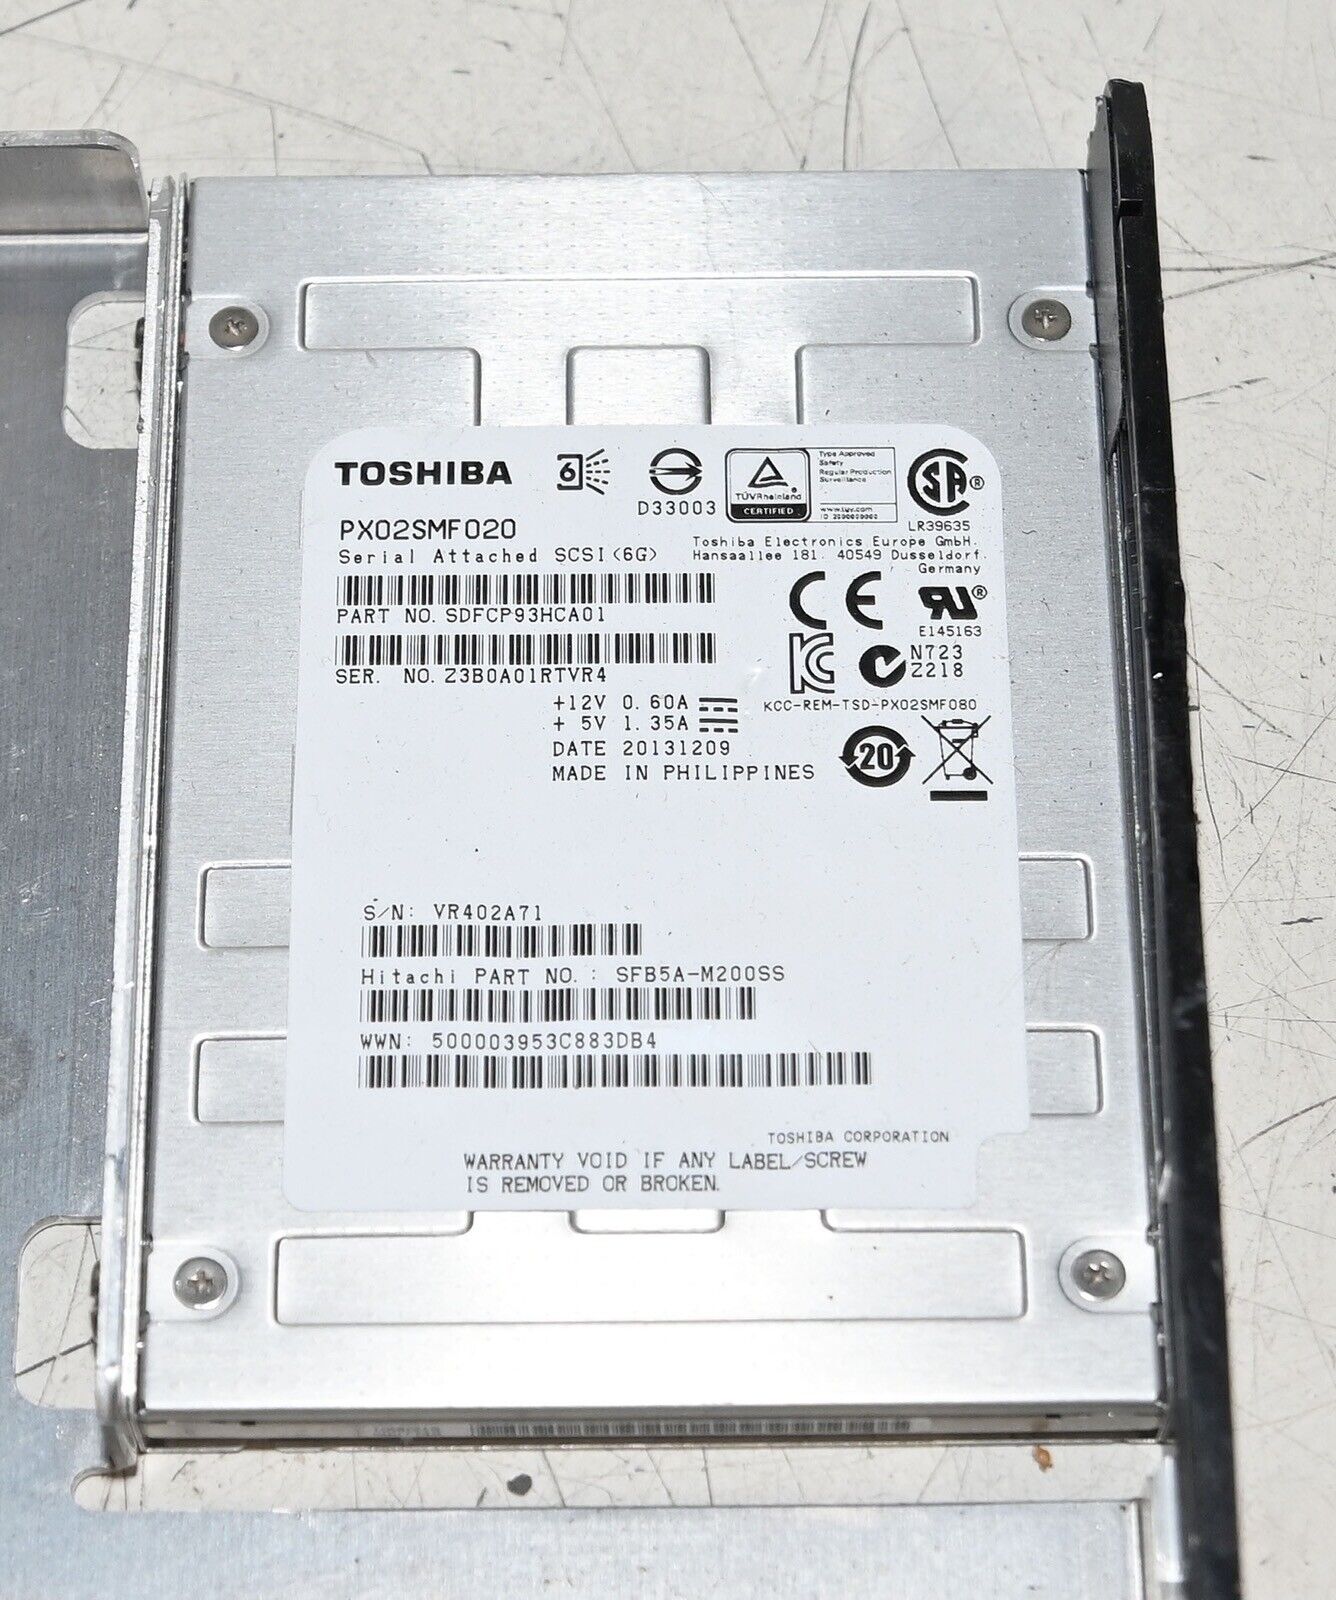 Toshiba PX02SMF020 200GB SSD SAS 6G Hitachi SLB5A-S200SS